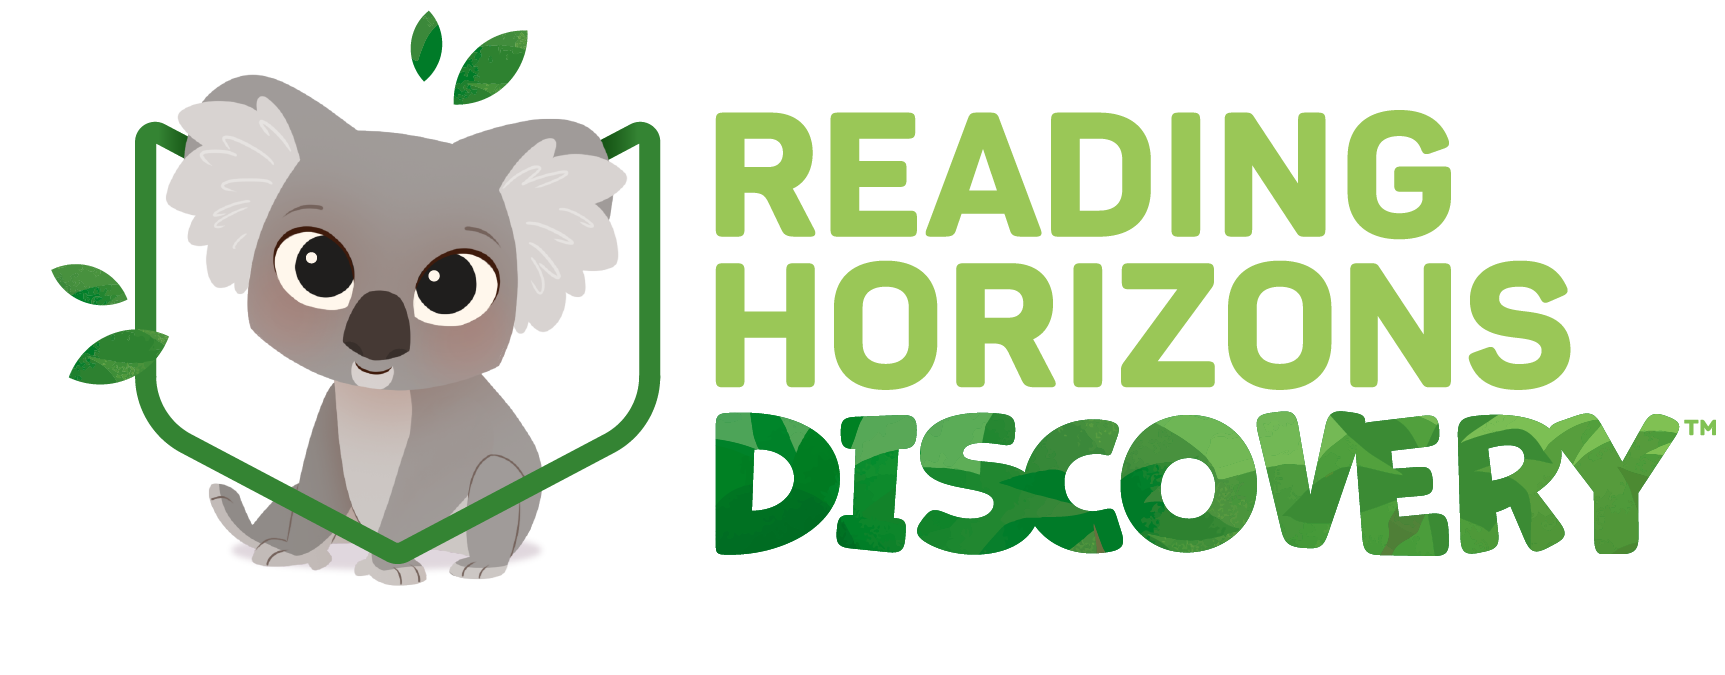 Reading Horizons Discovery logo with Koala